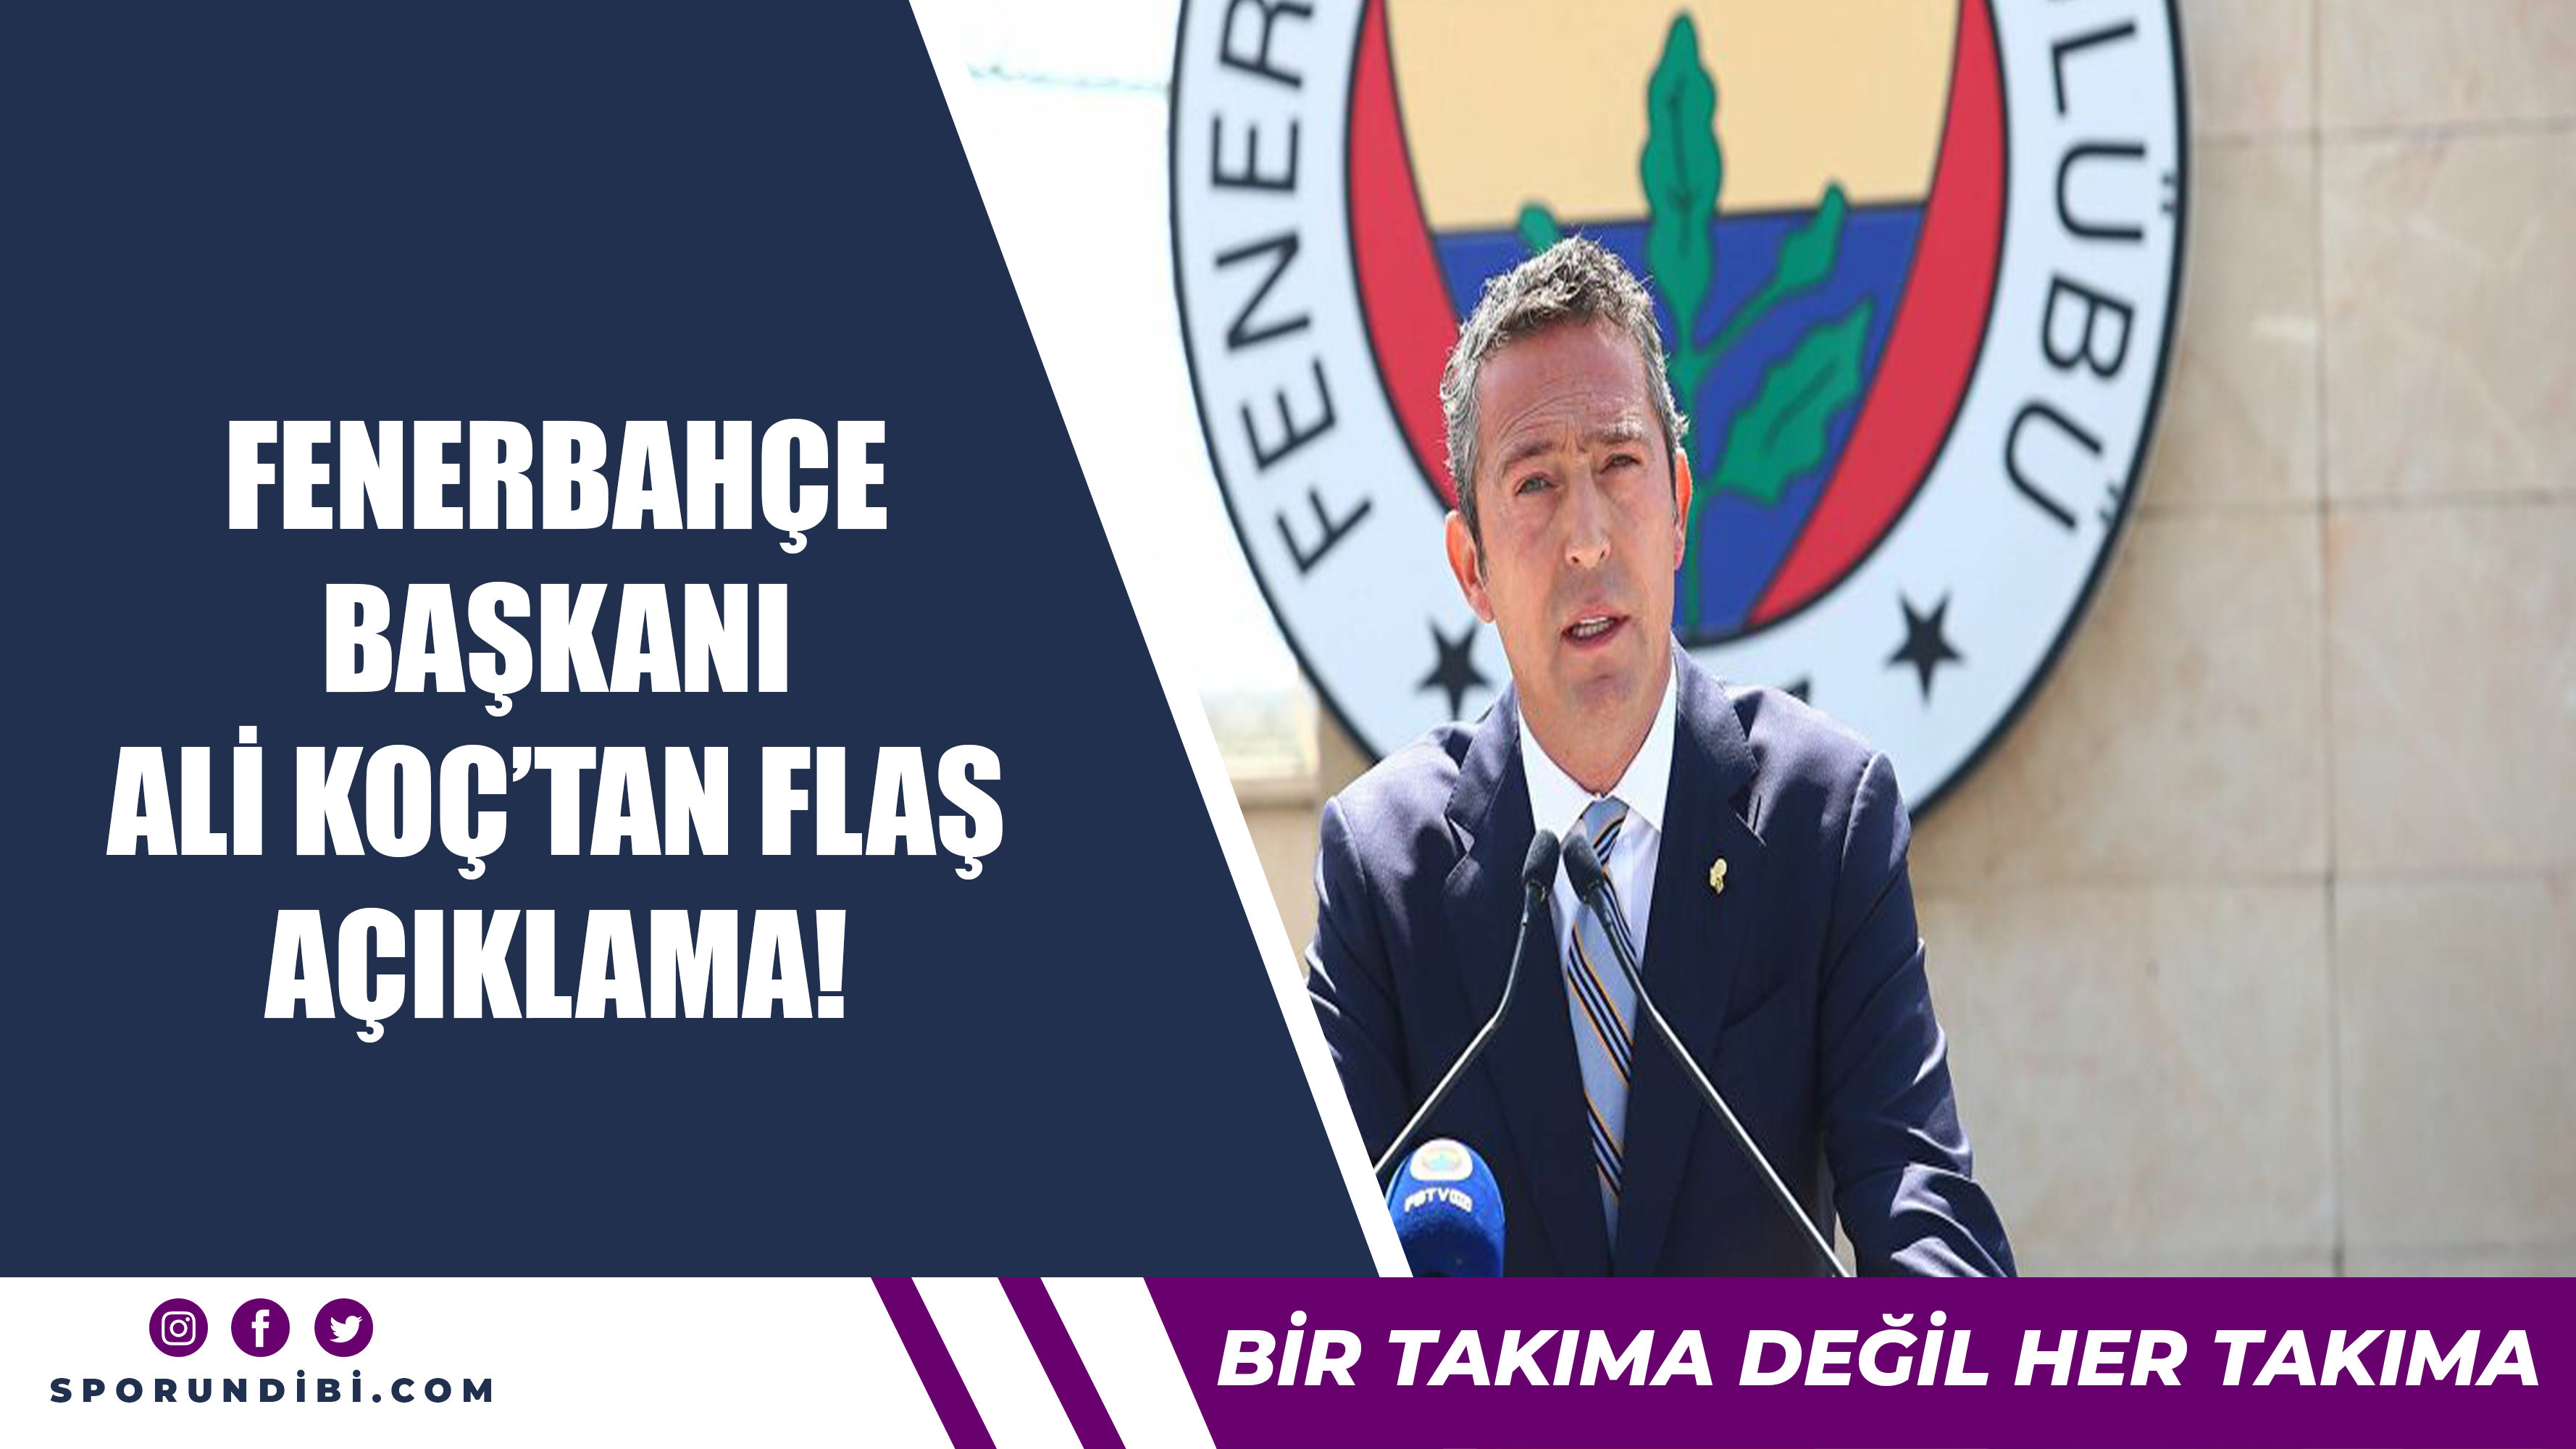 Fenerbahçe başkanı Ali Koç'tan flaş açıklama!